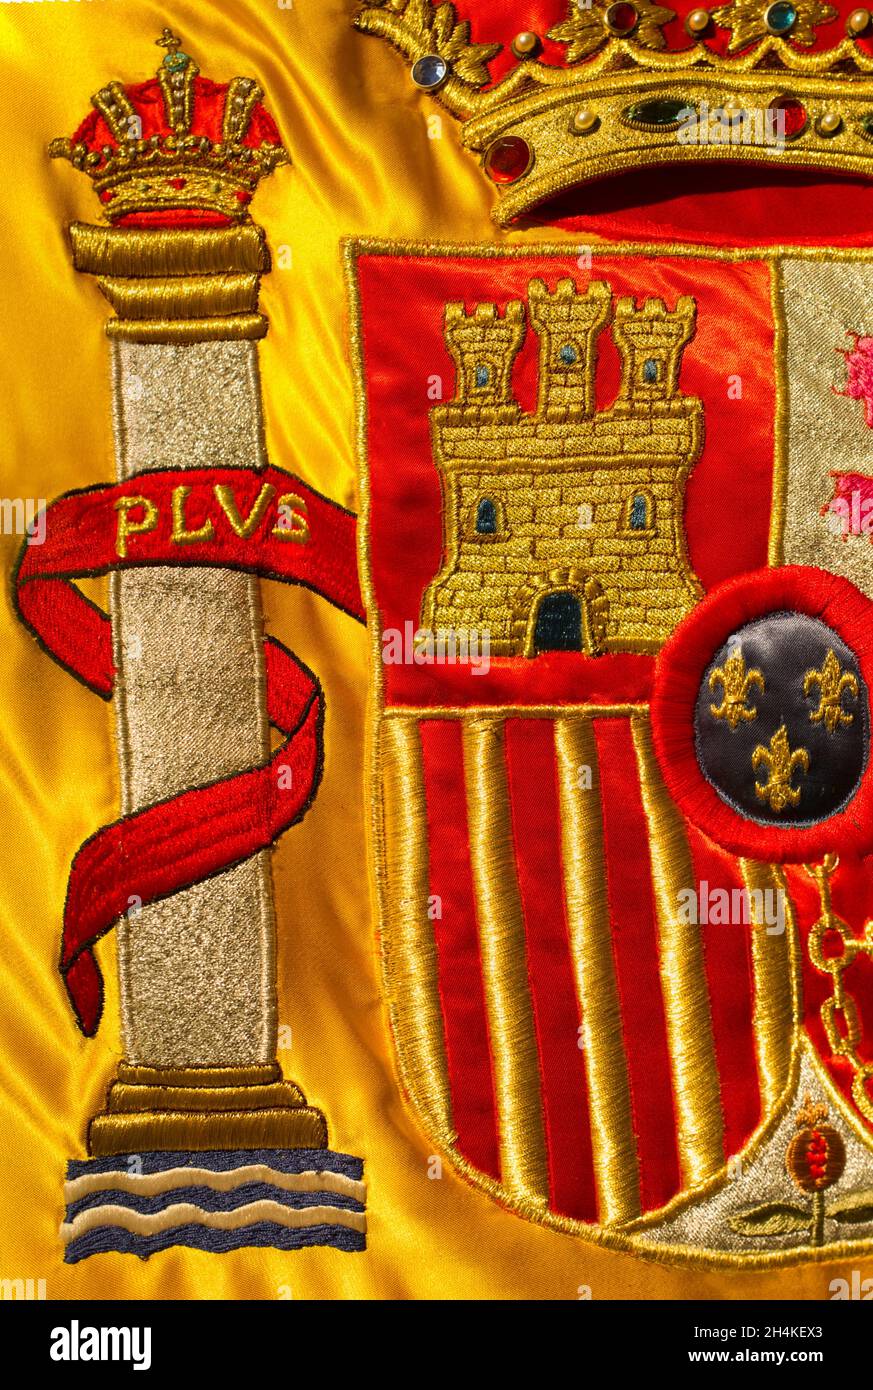 Escudo de la nación española ricamente bordado en su bandera. Primer plano. Foto de stock